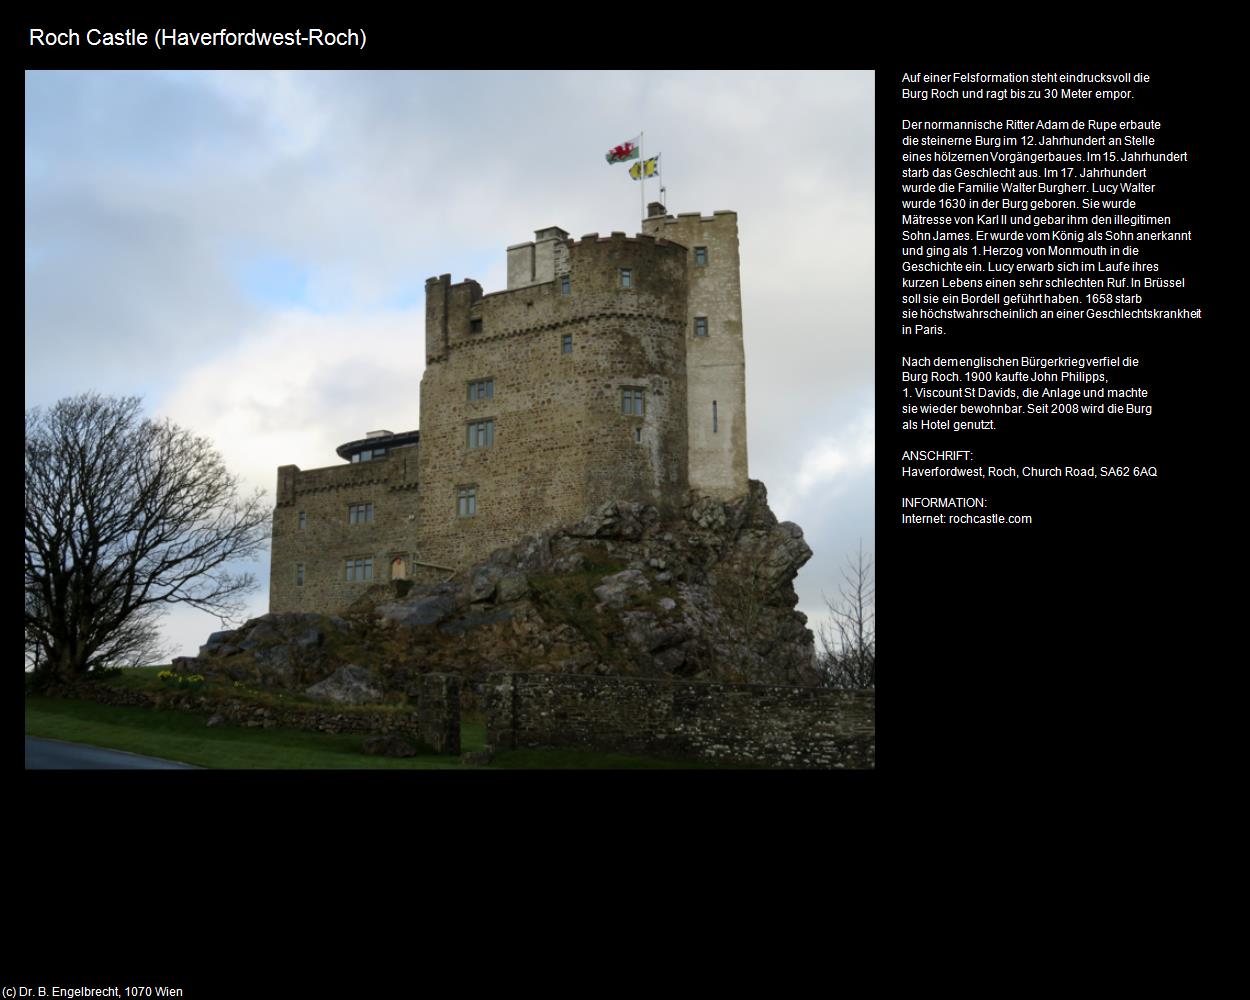 Roch Castle  (Haverfordwest, Wales) in Kulturatlas-ENGLAND und WALES